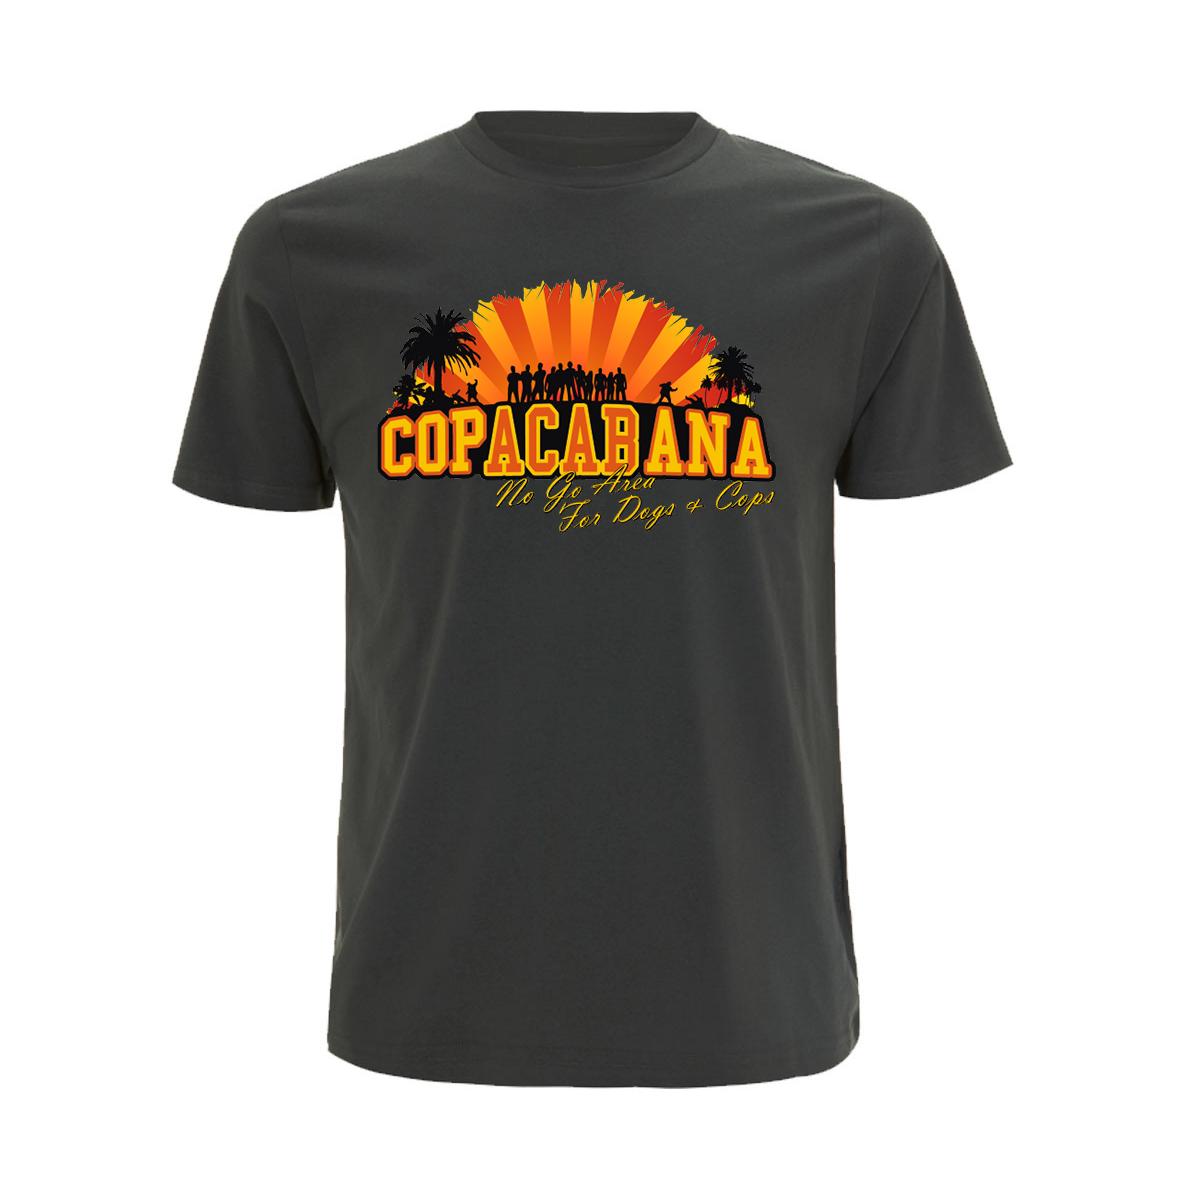 Copacabana - Männer T-Shirt - No go Area for Dogs and Cops - grau